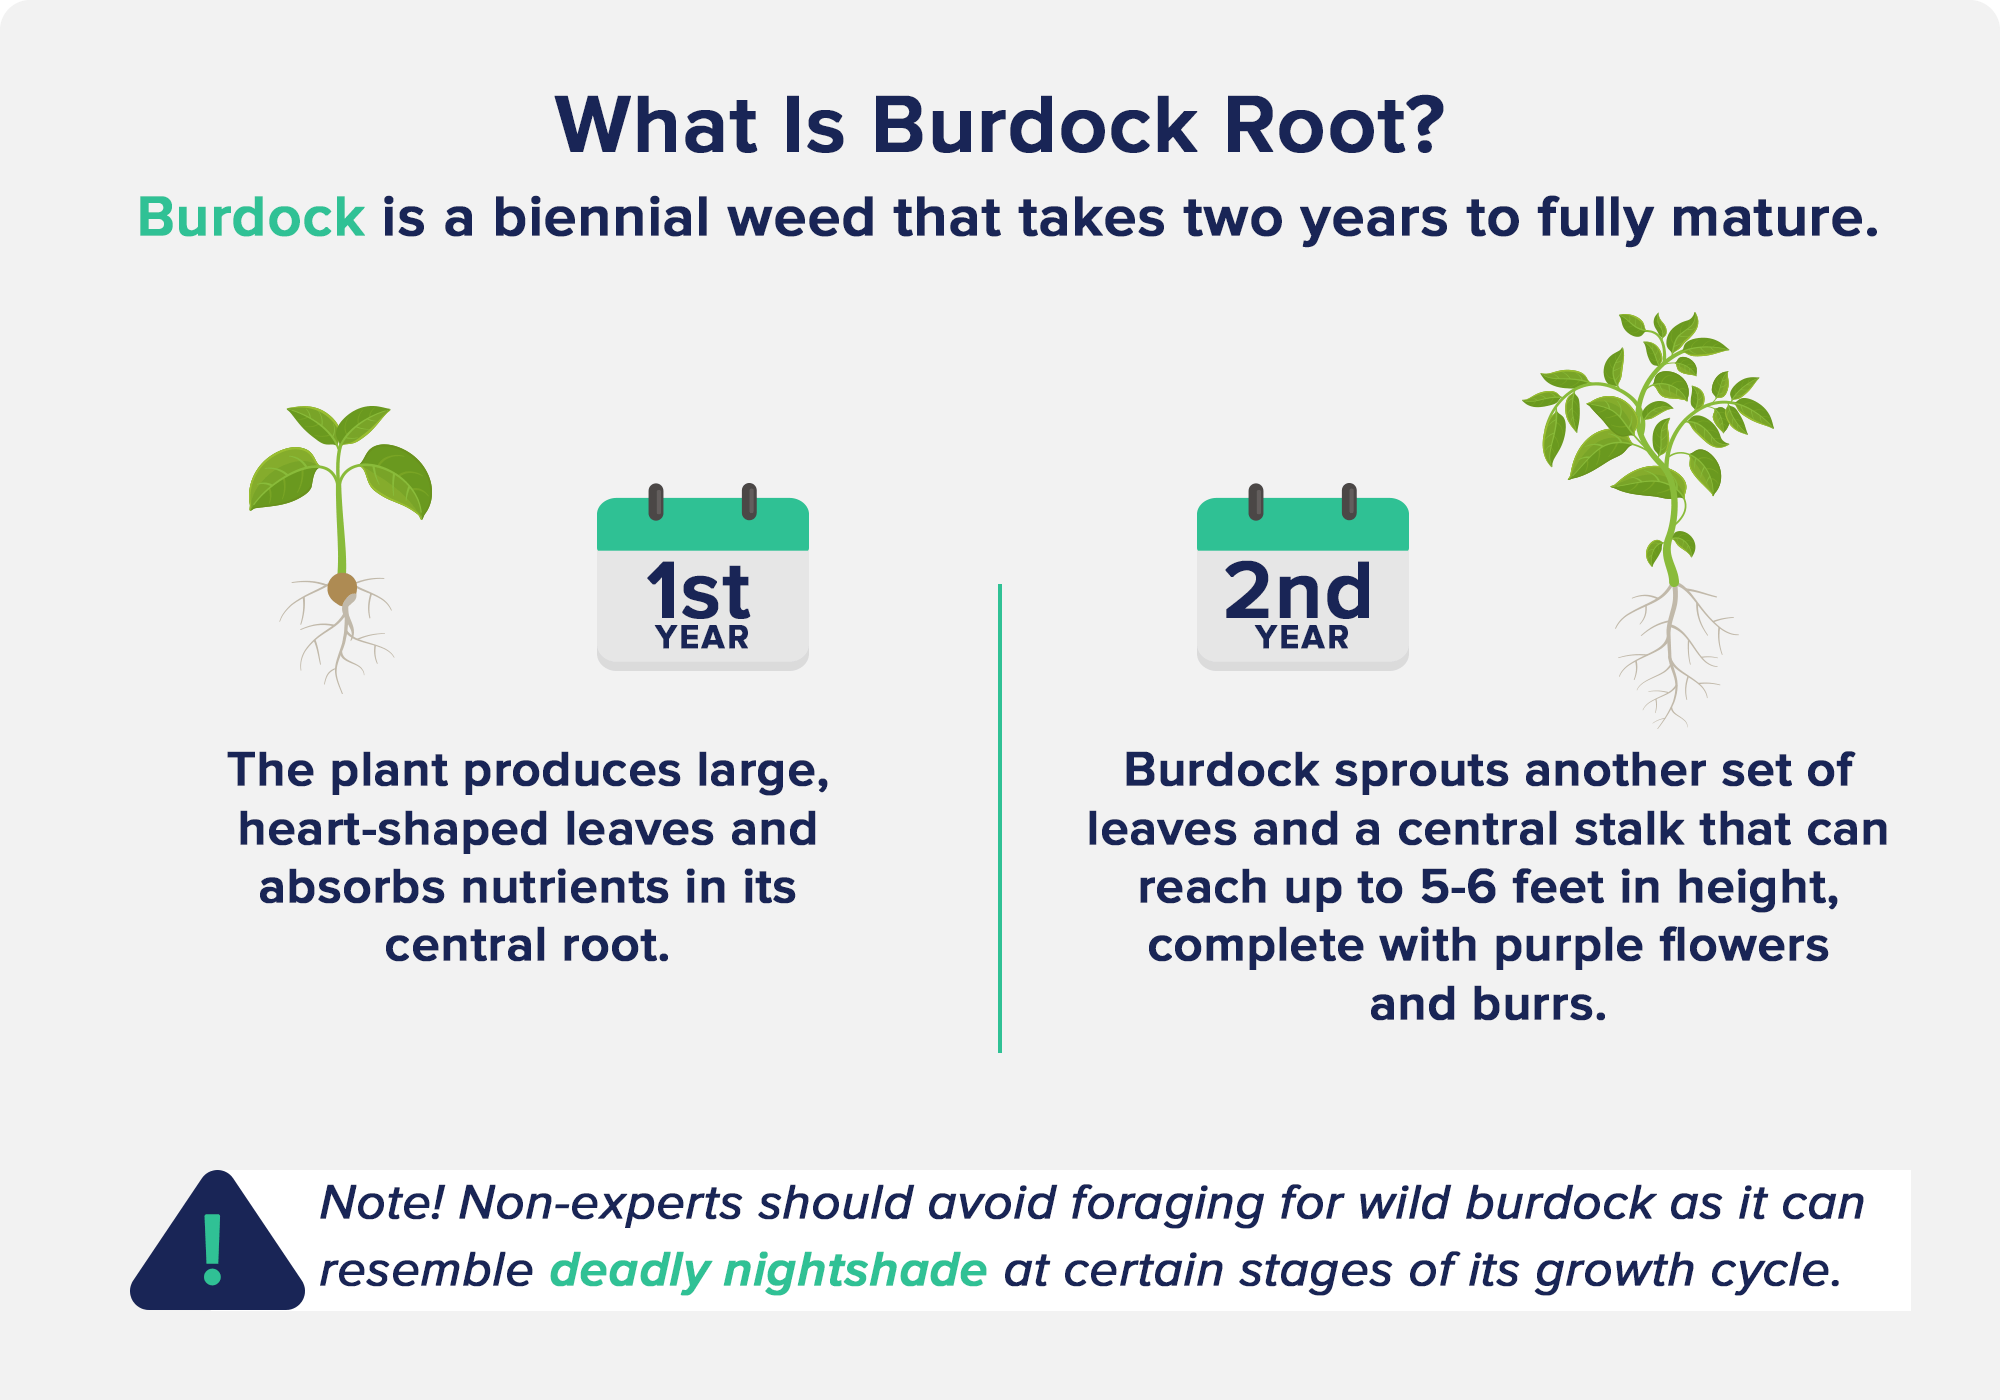 What is Burdock Root?